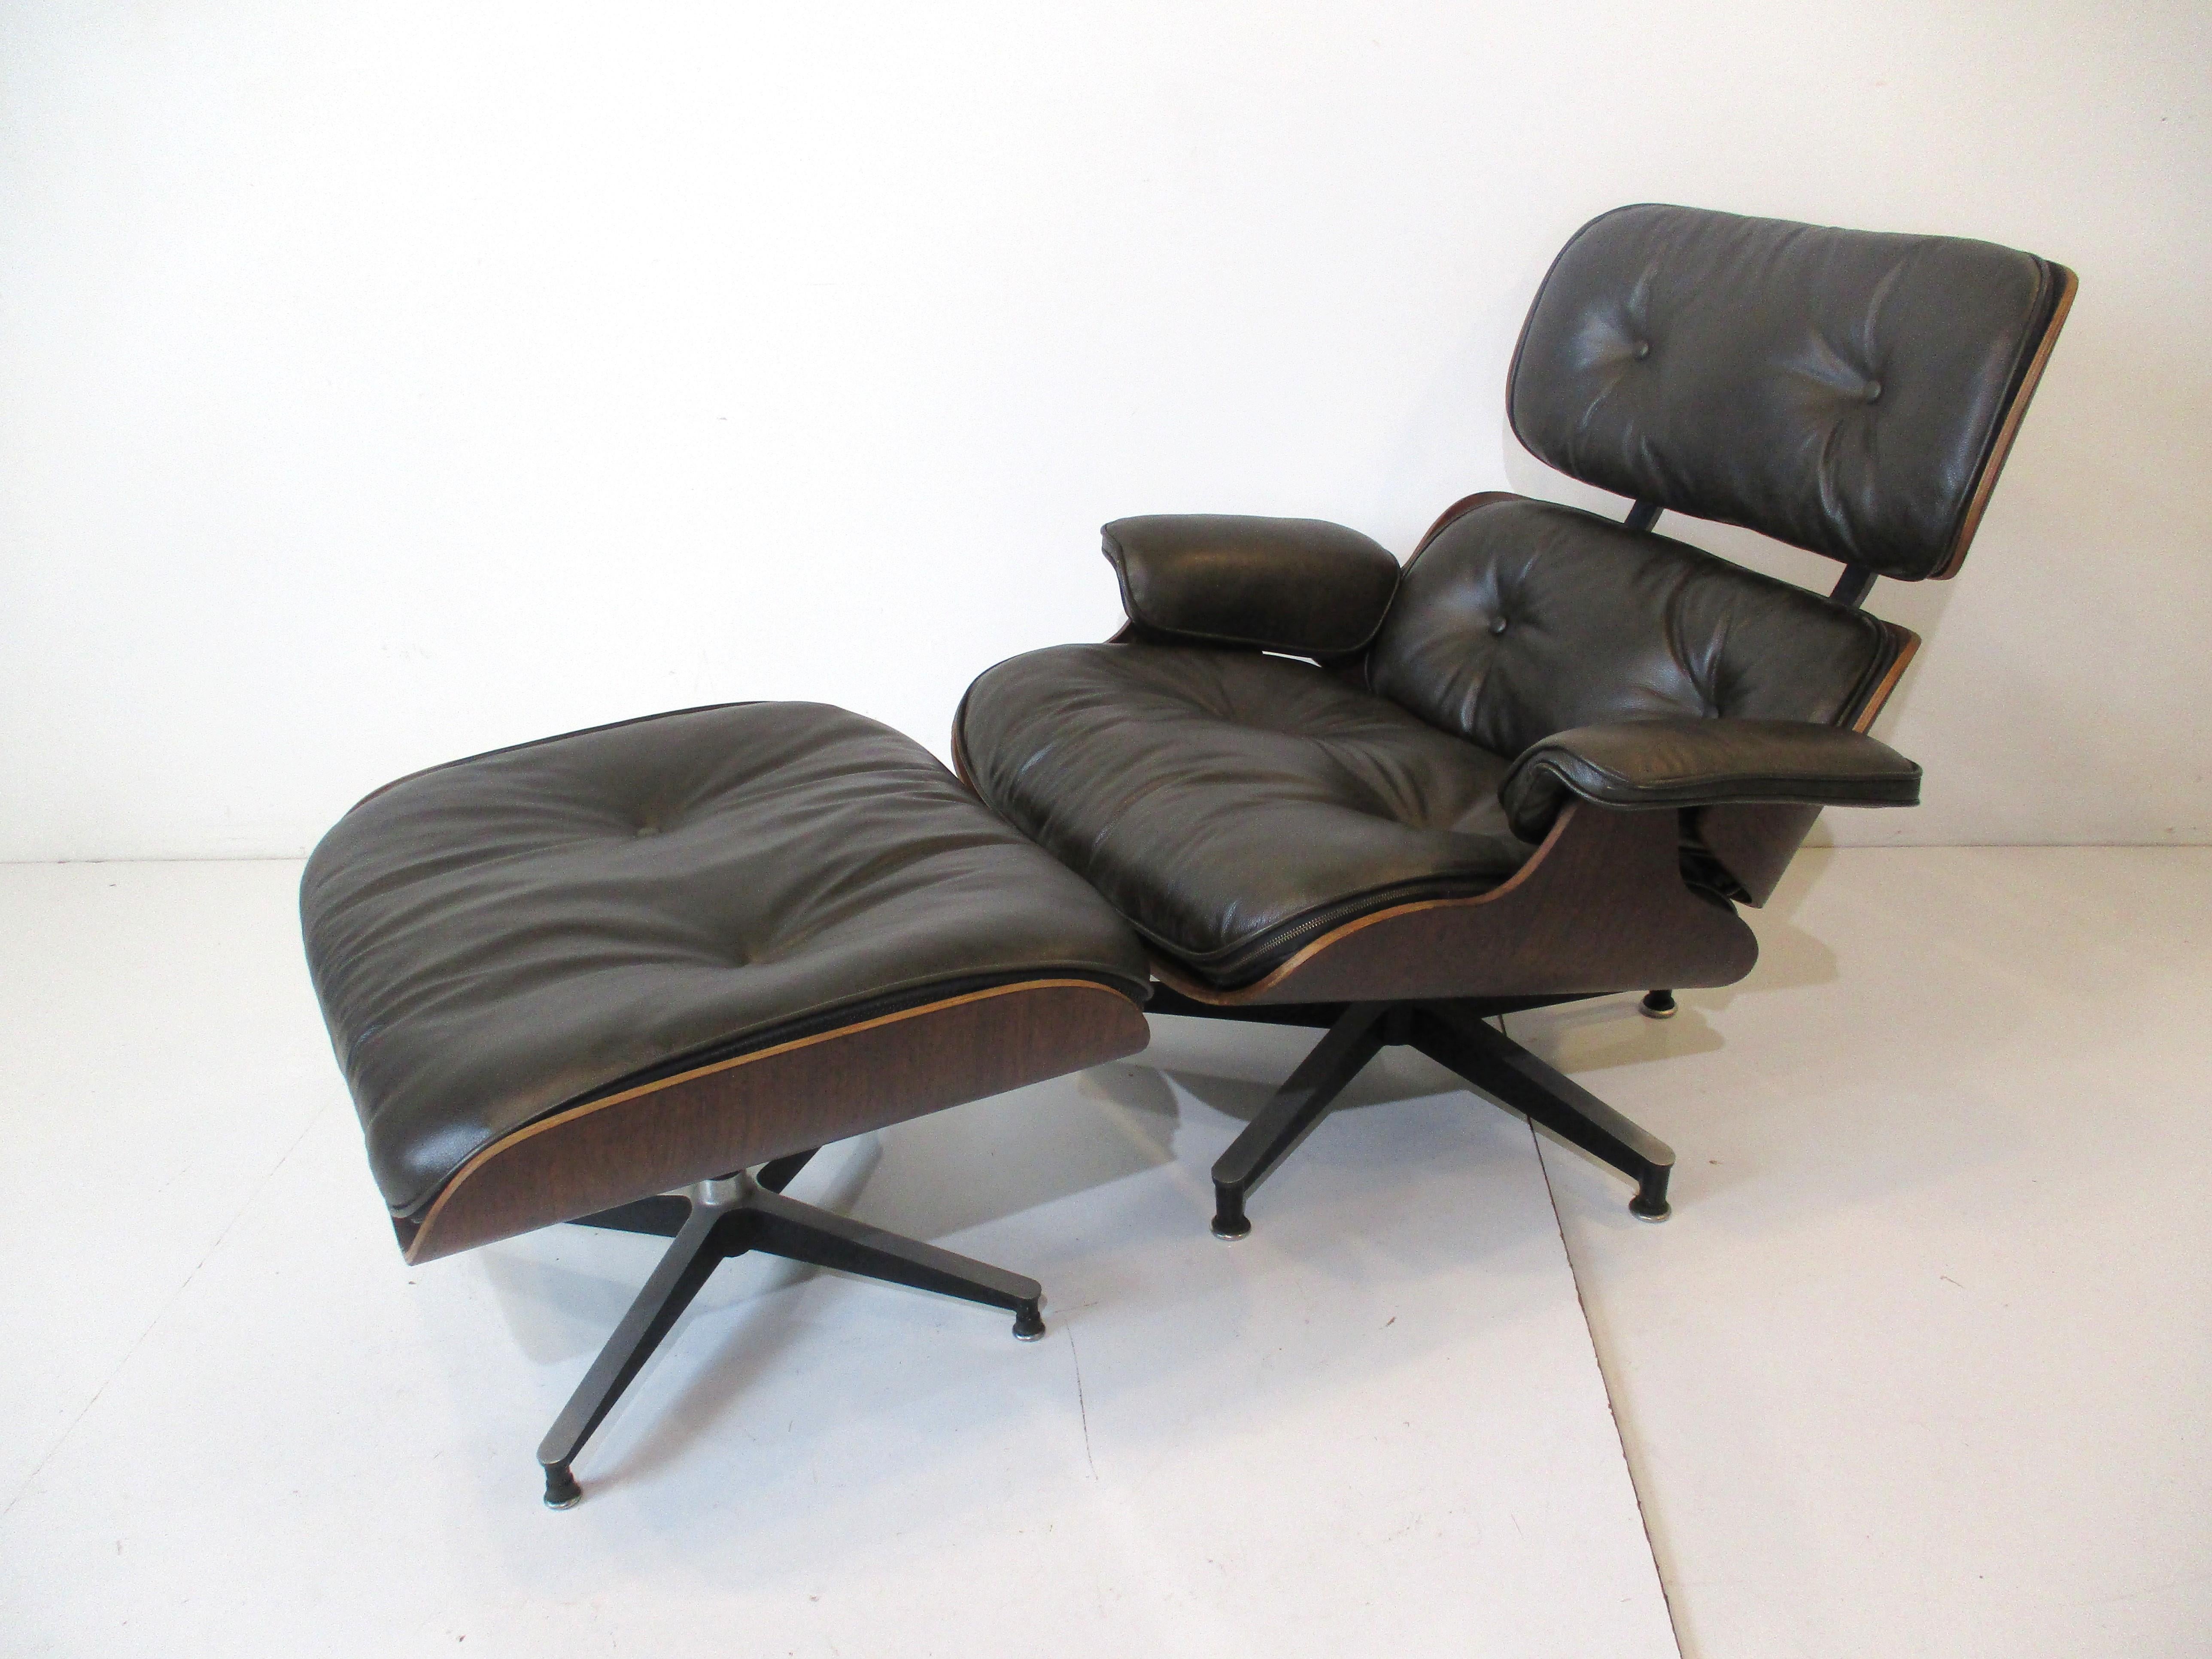 Un rare fauteuil de salon Eames 670 en cuir vert foncé avec ottoman assorti dans une salle d'exposition.  palissandre brésilien foncé et riche. Posé sur des bases en étoile en aluminium moulé avec des détails noirs, c'est l'icône du design et du